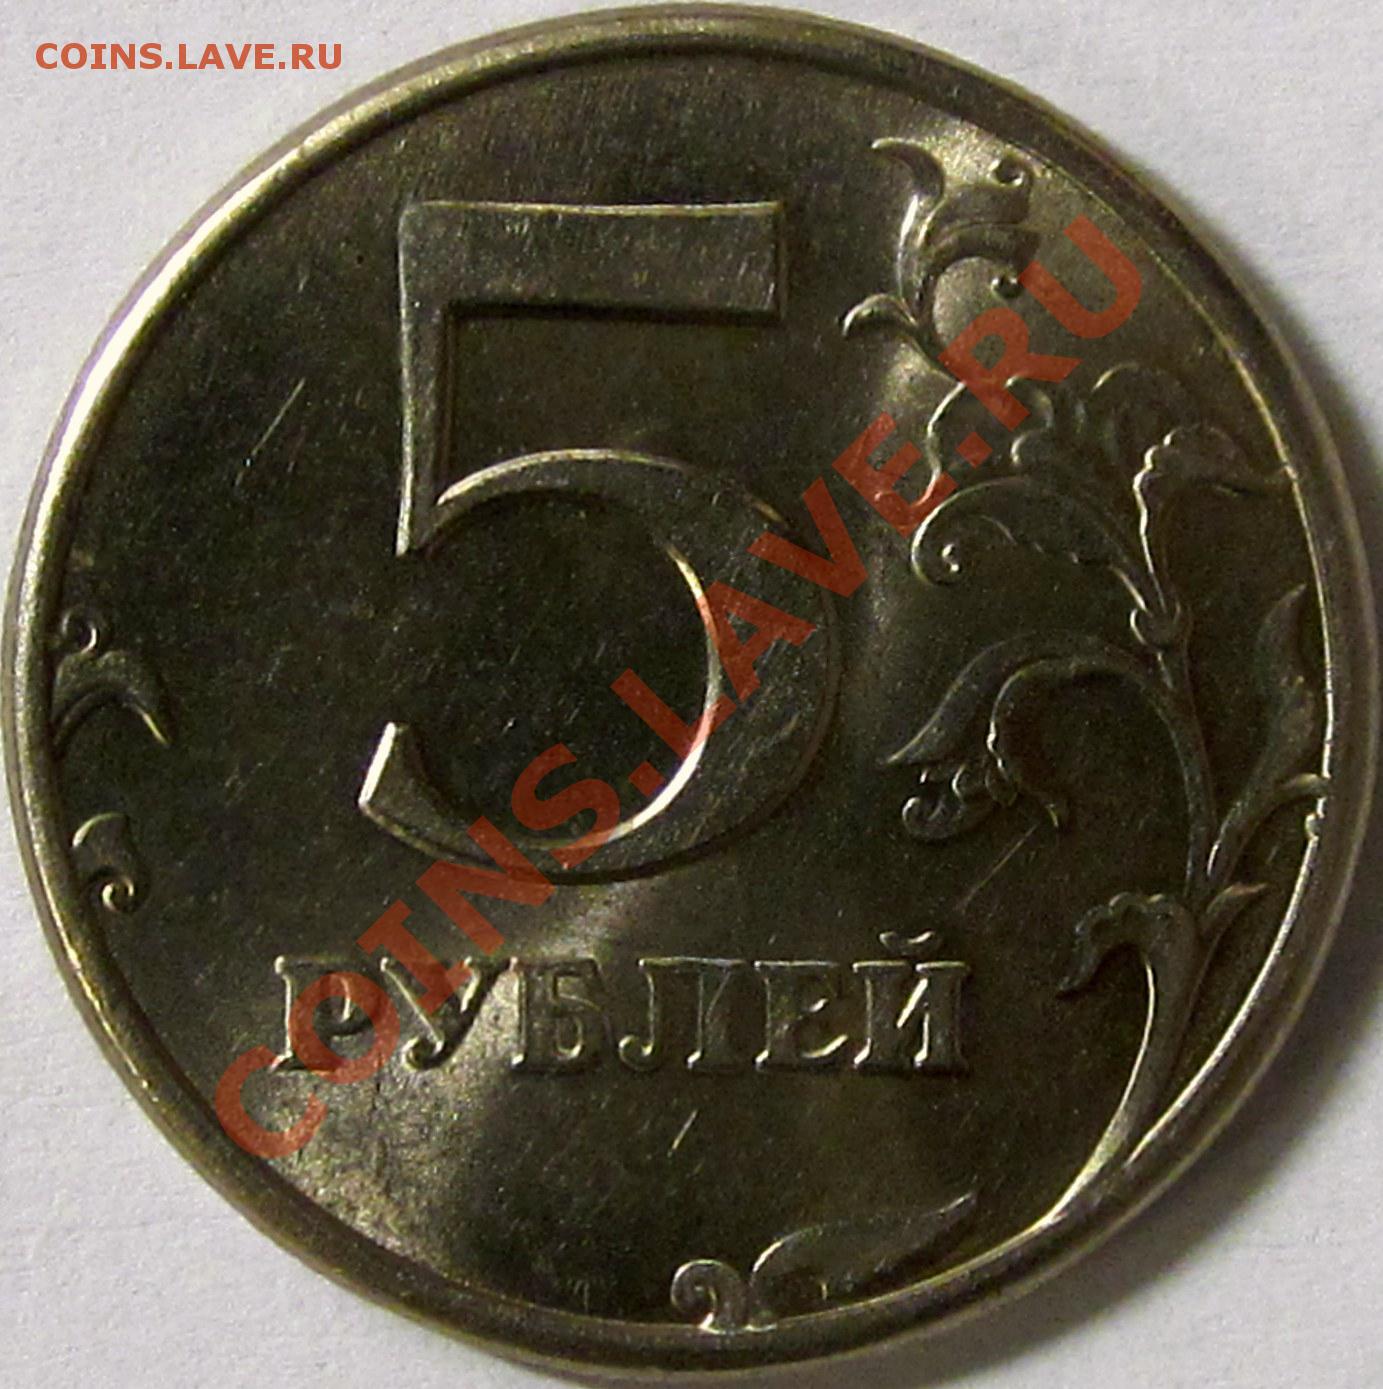 5 рублей 80. 5 Рублей 1997 СПМД.